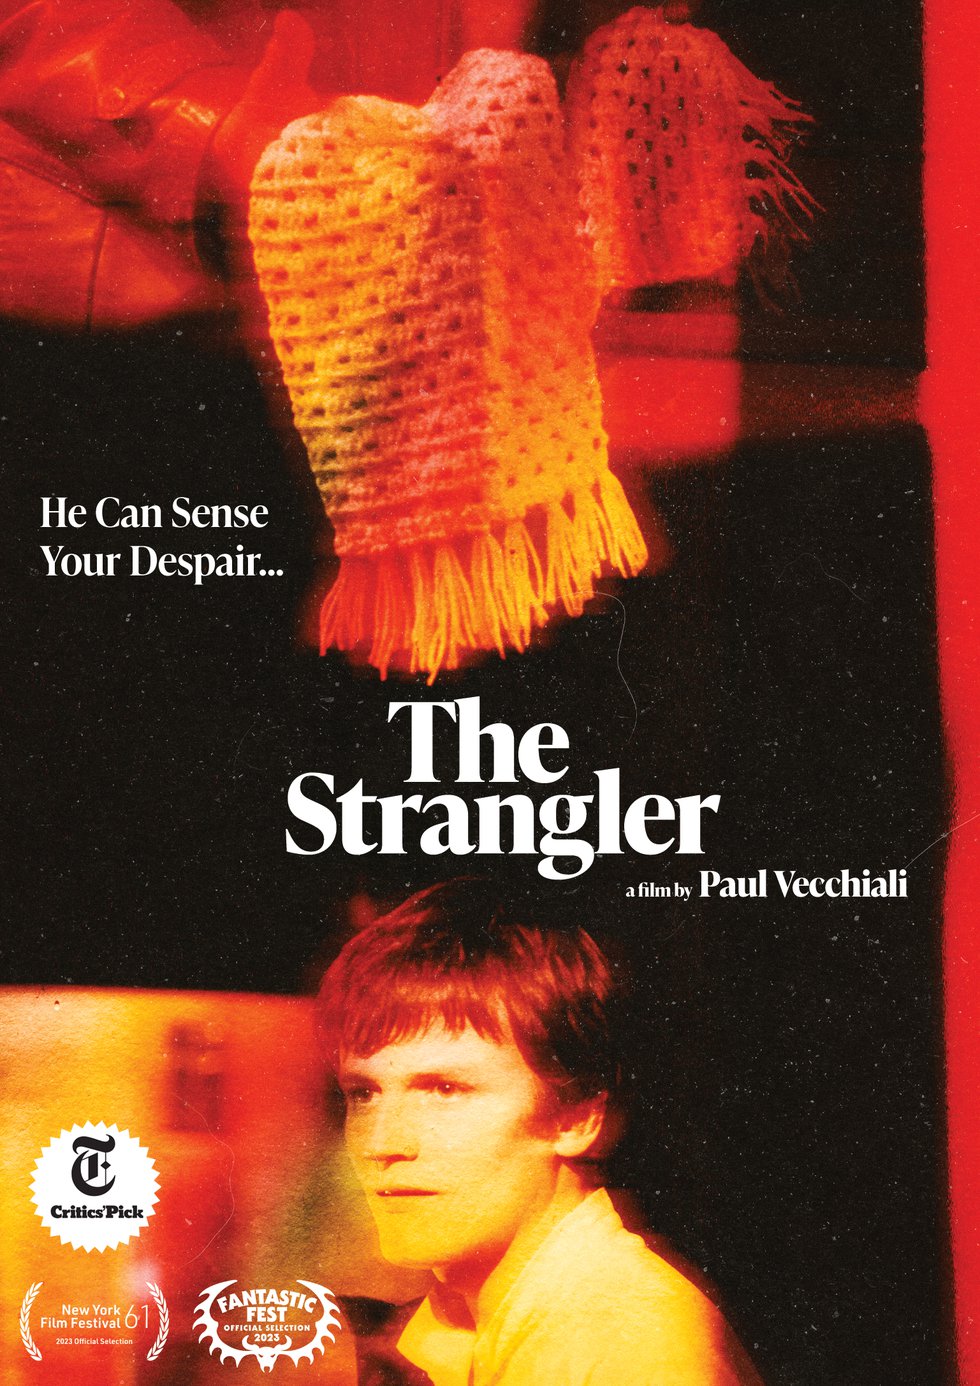 The Strangler DVD